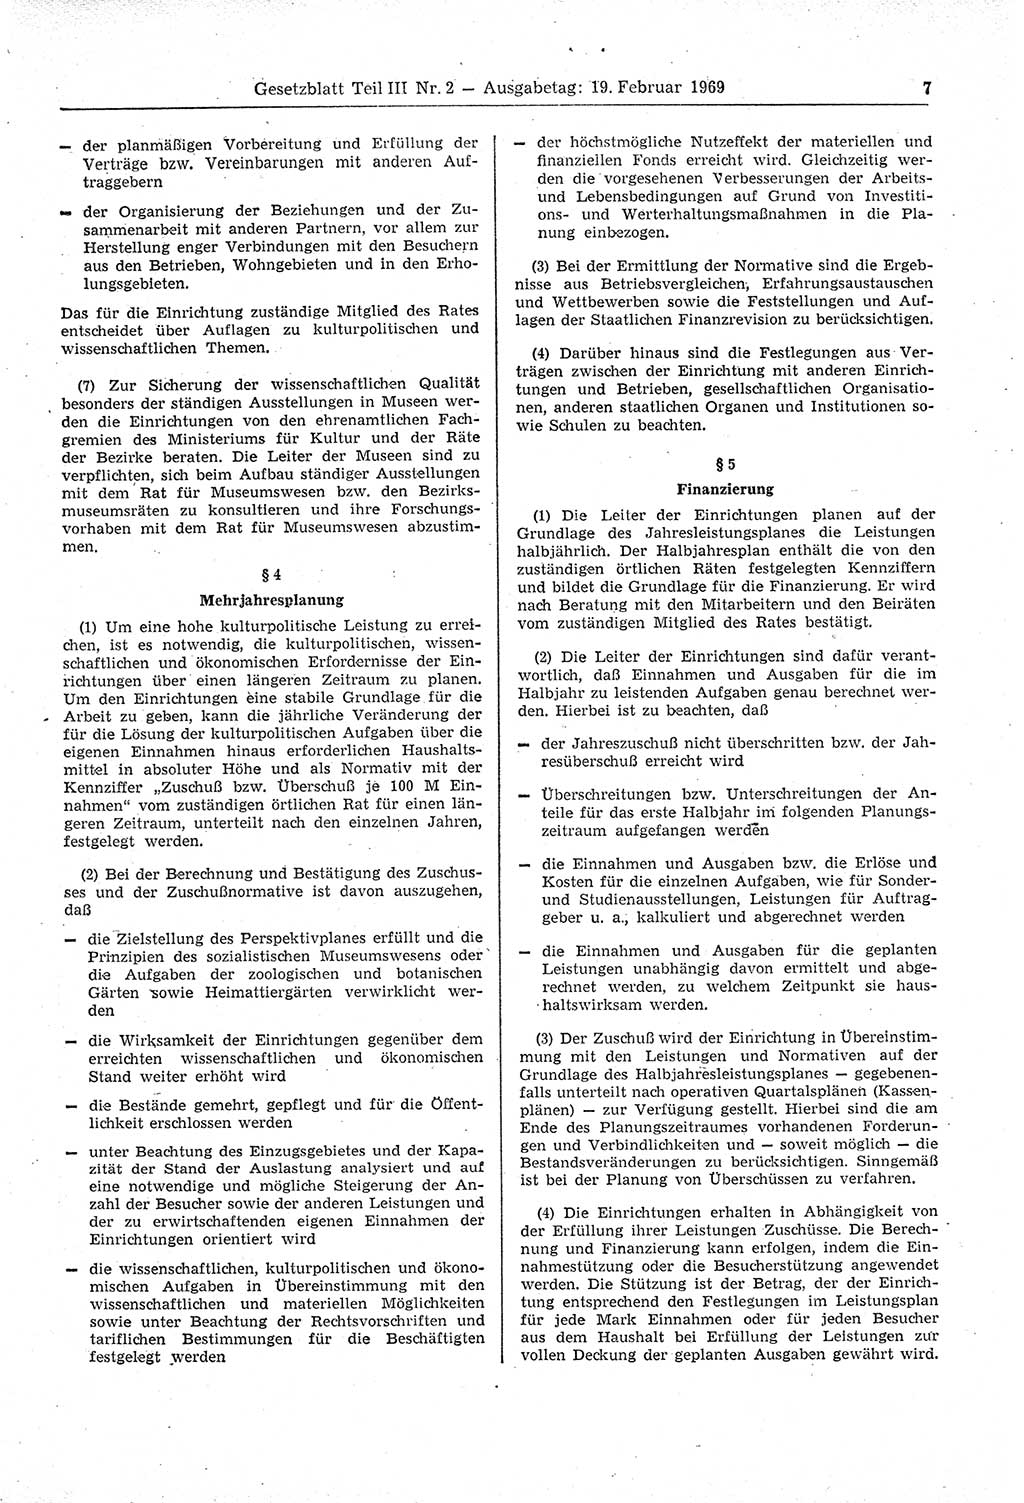 Gesetzblatt (GBl.) der Deutschen Demokratischen Republik (DDR) Teil ⅠⅠⅠ 1969, Seite 7 (GBl. DDR ⅠⅠⅠ 1969, S. 7)